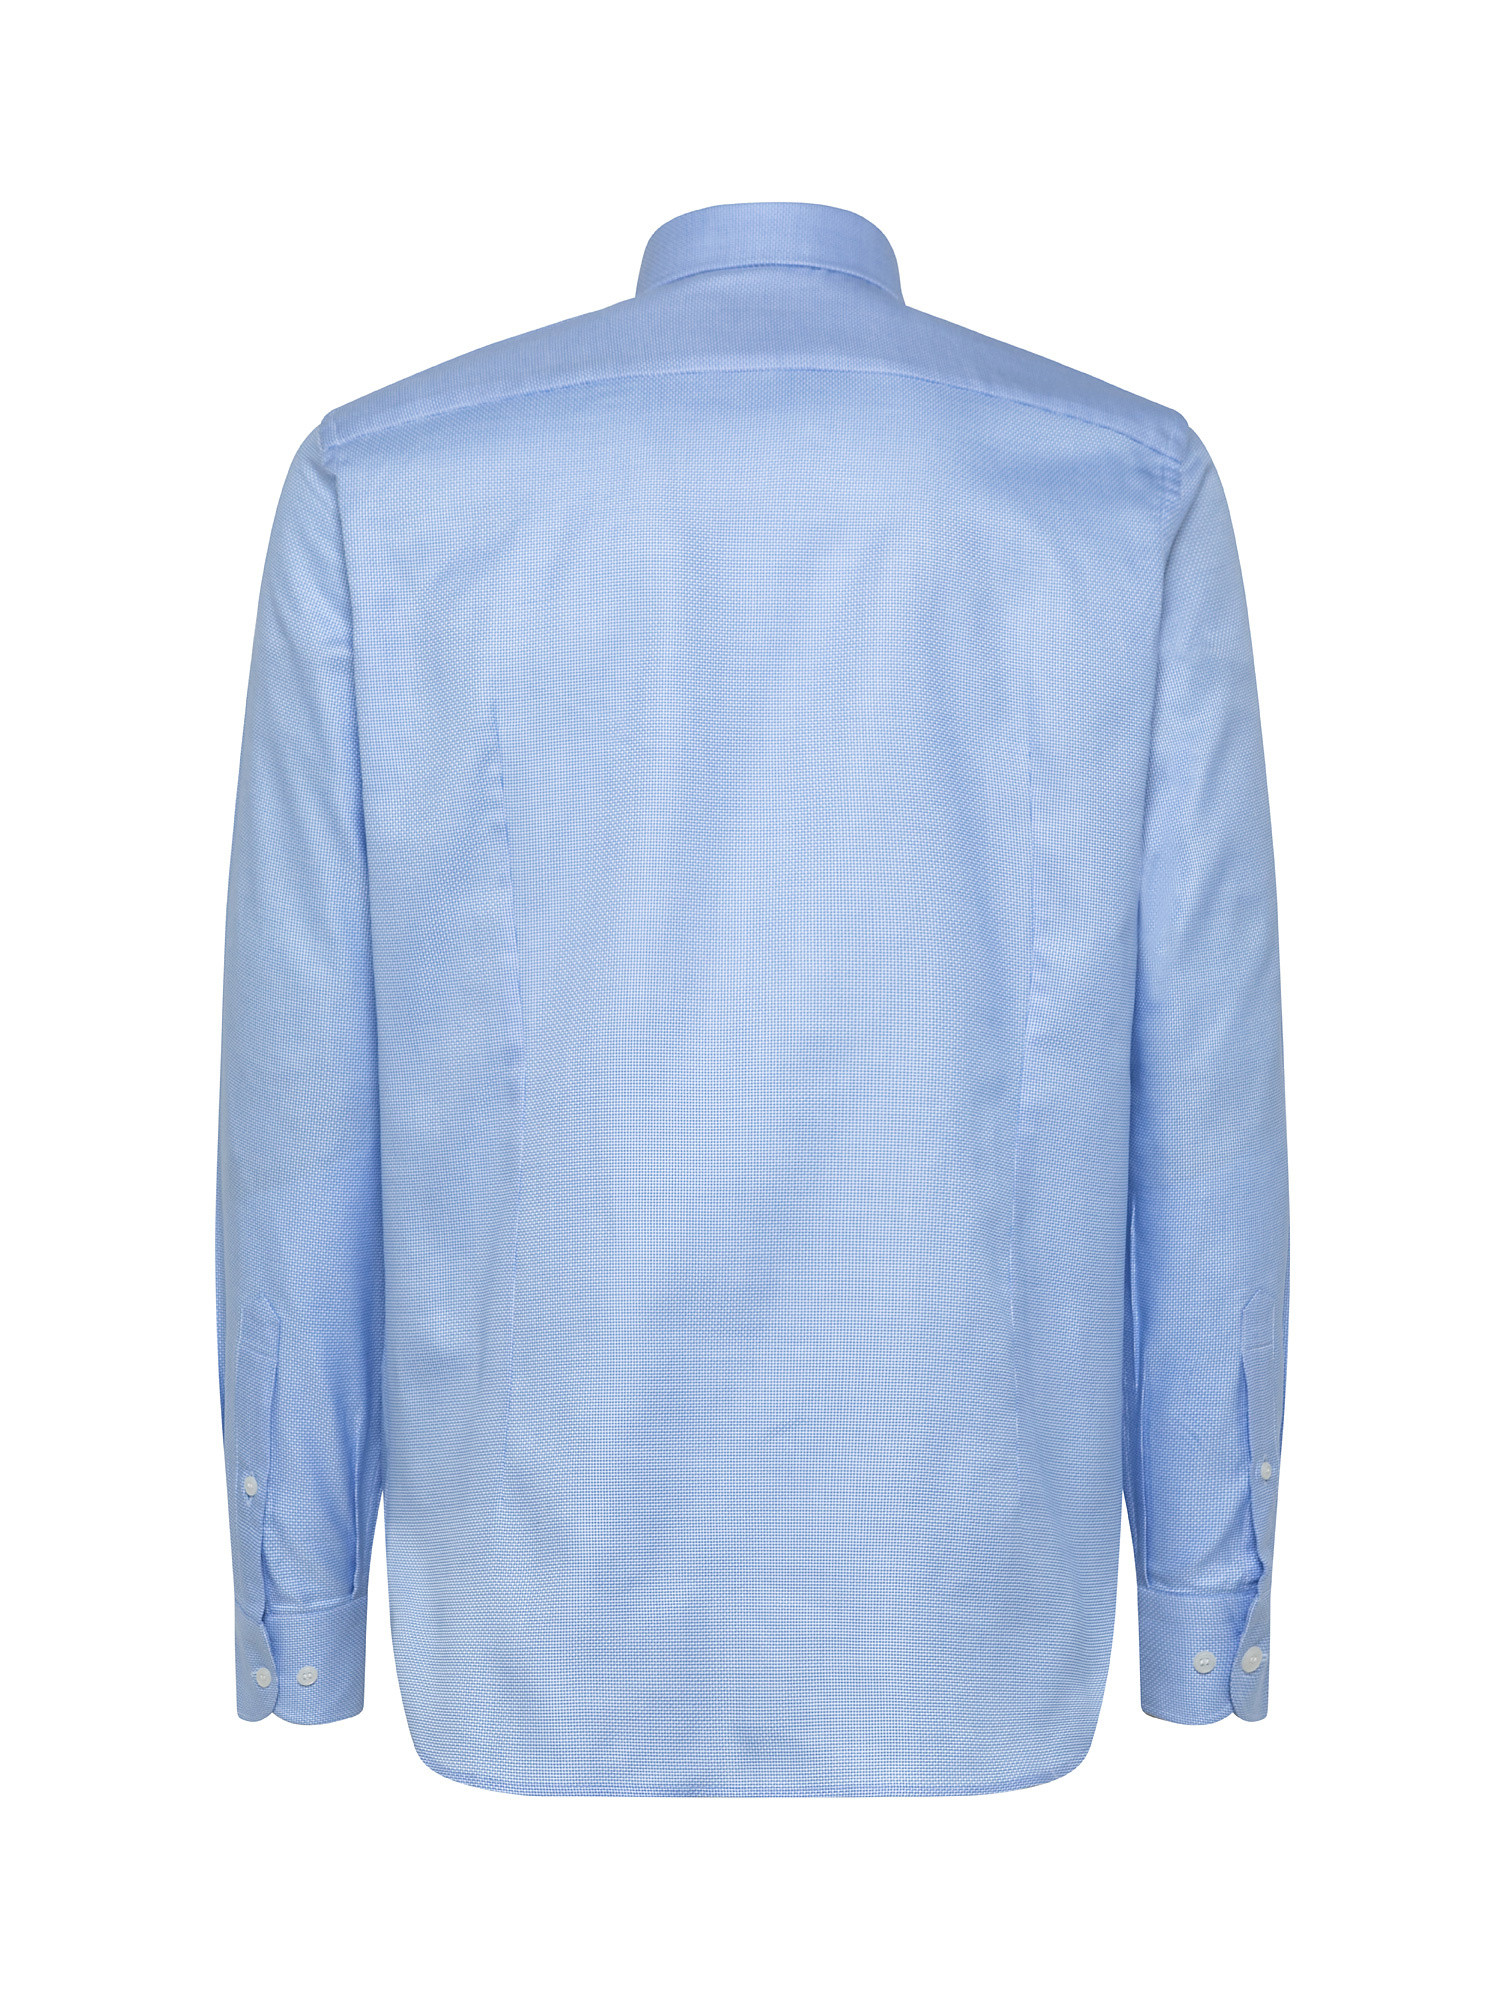 Camicia slim fit in cotone armaturato, Azzurro, large